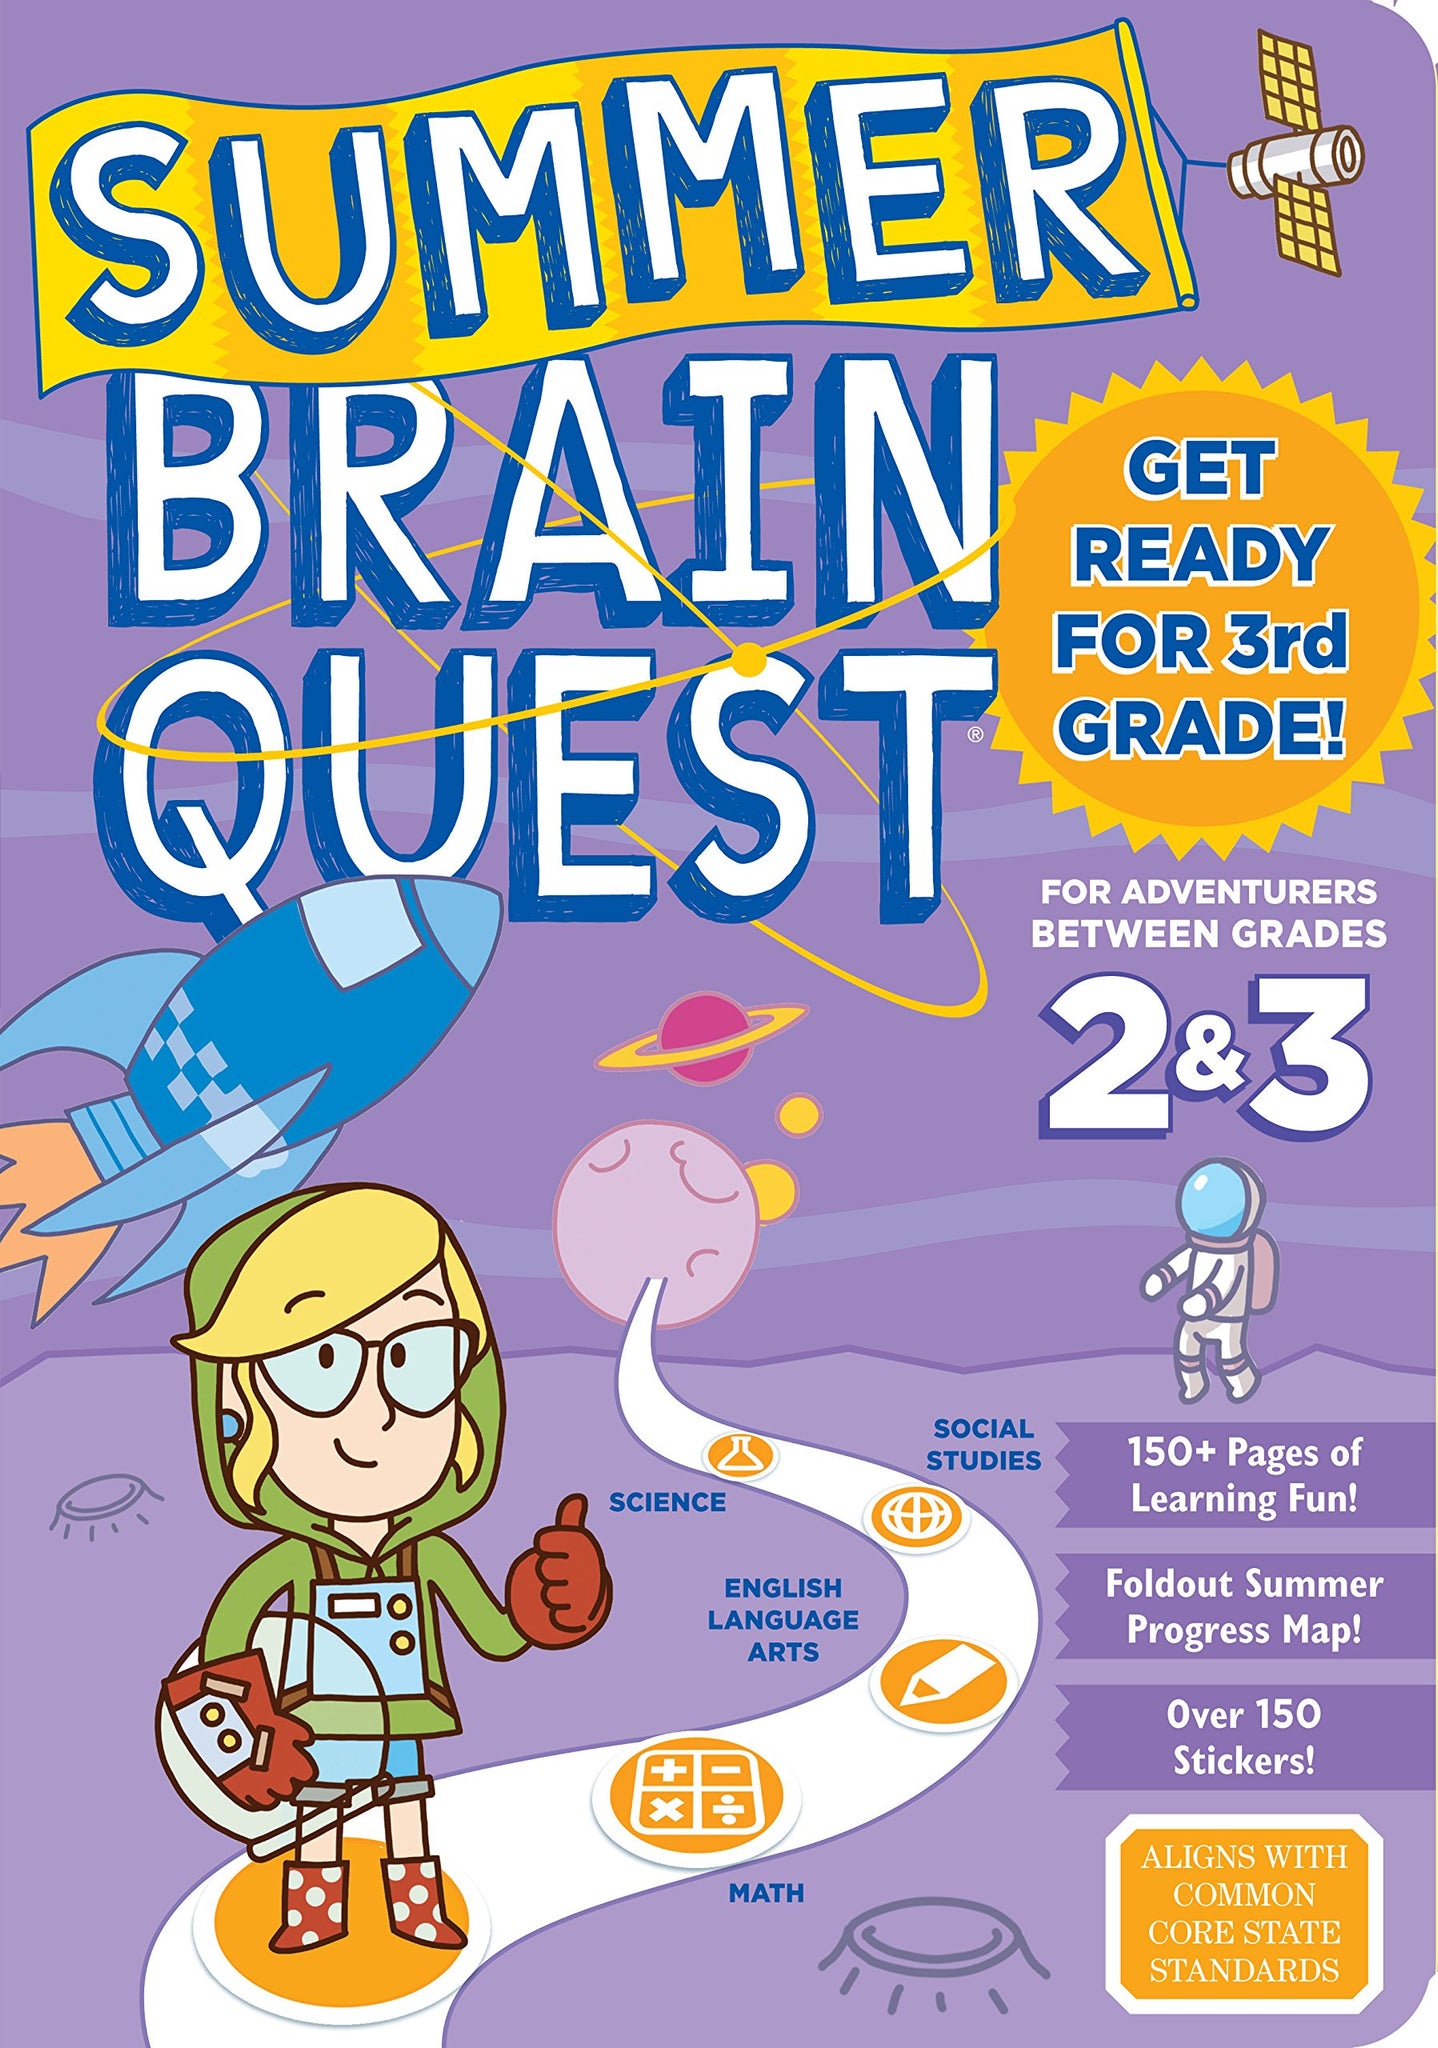 Summer Brain Quest Grades 2 & 3